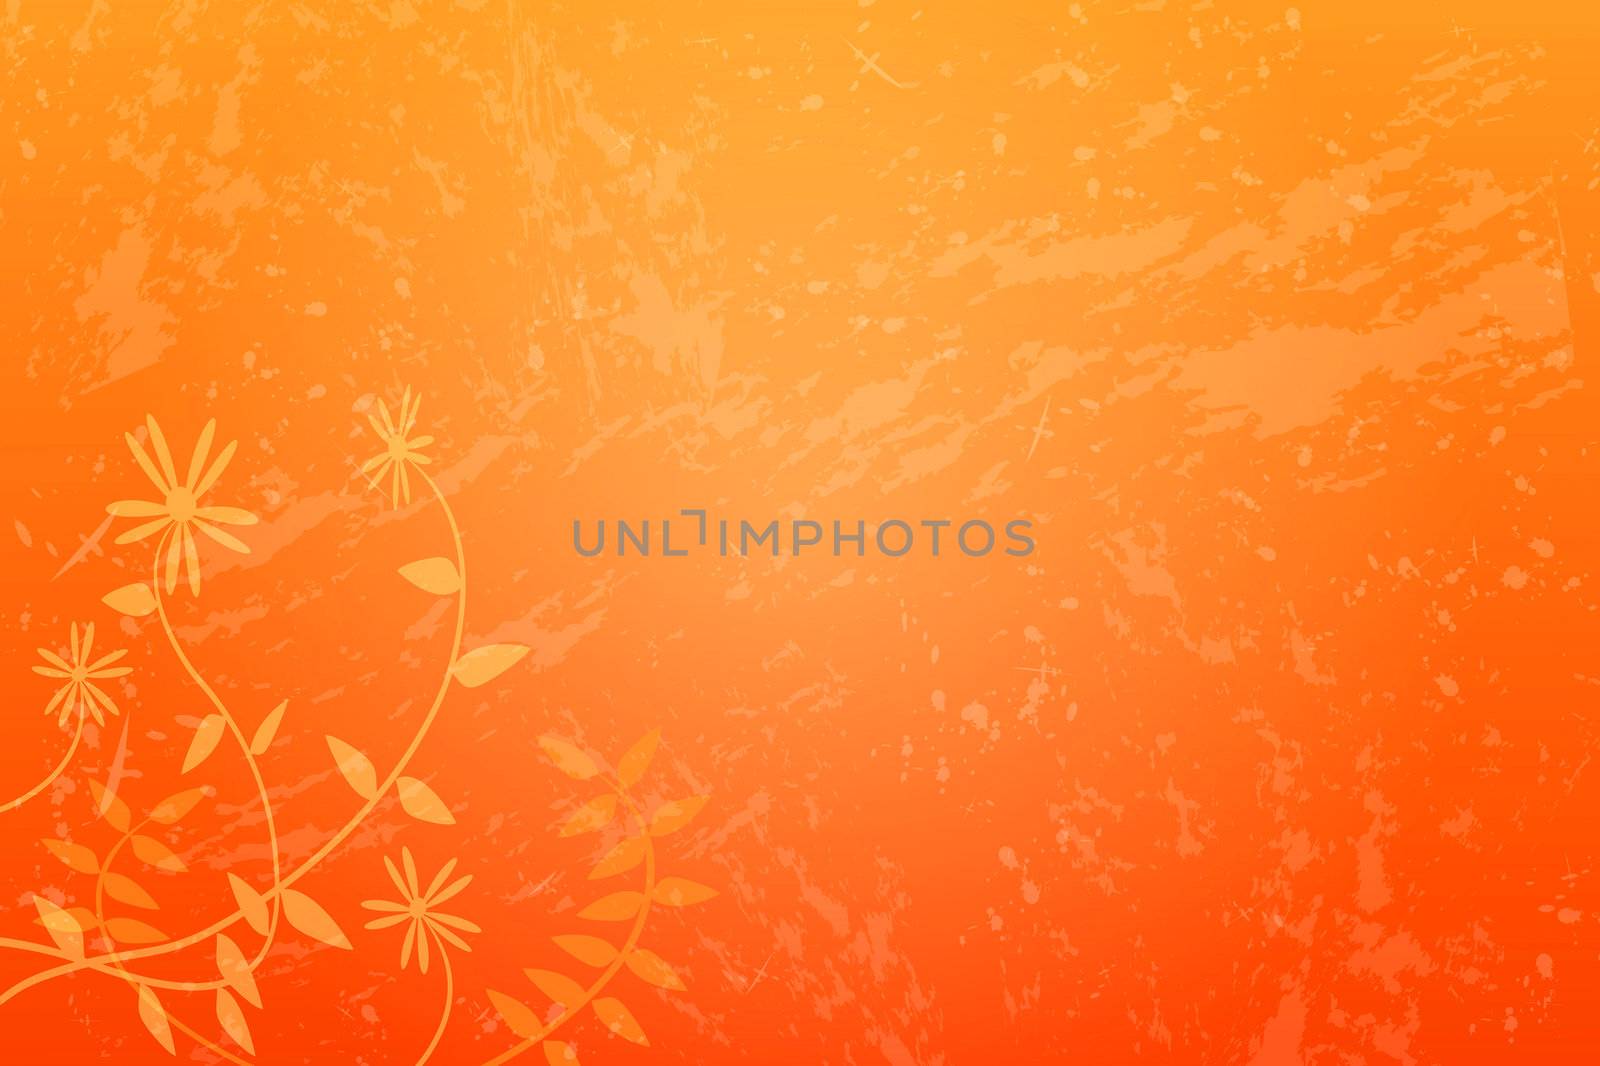 Image of an orange grunge floral background.